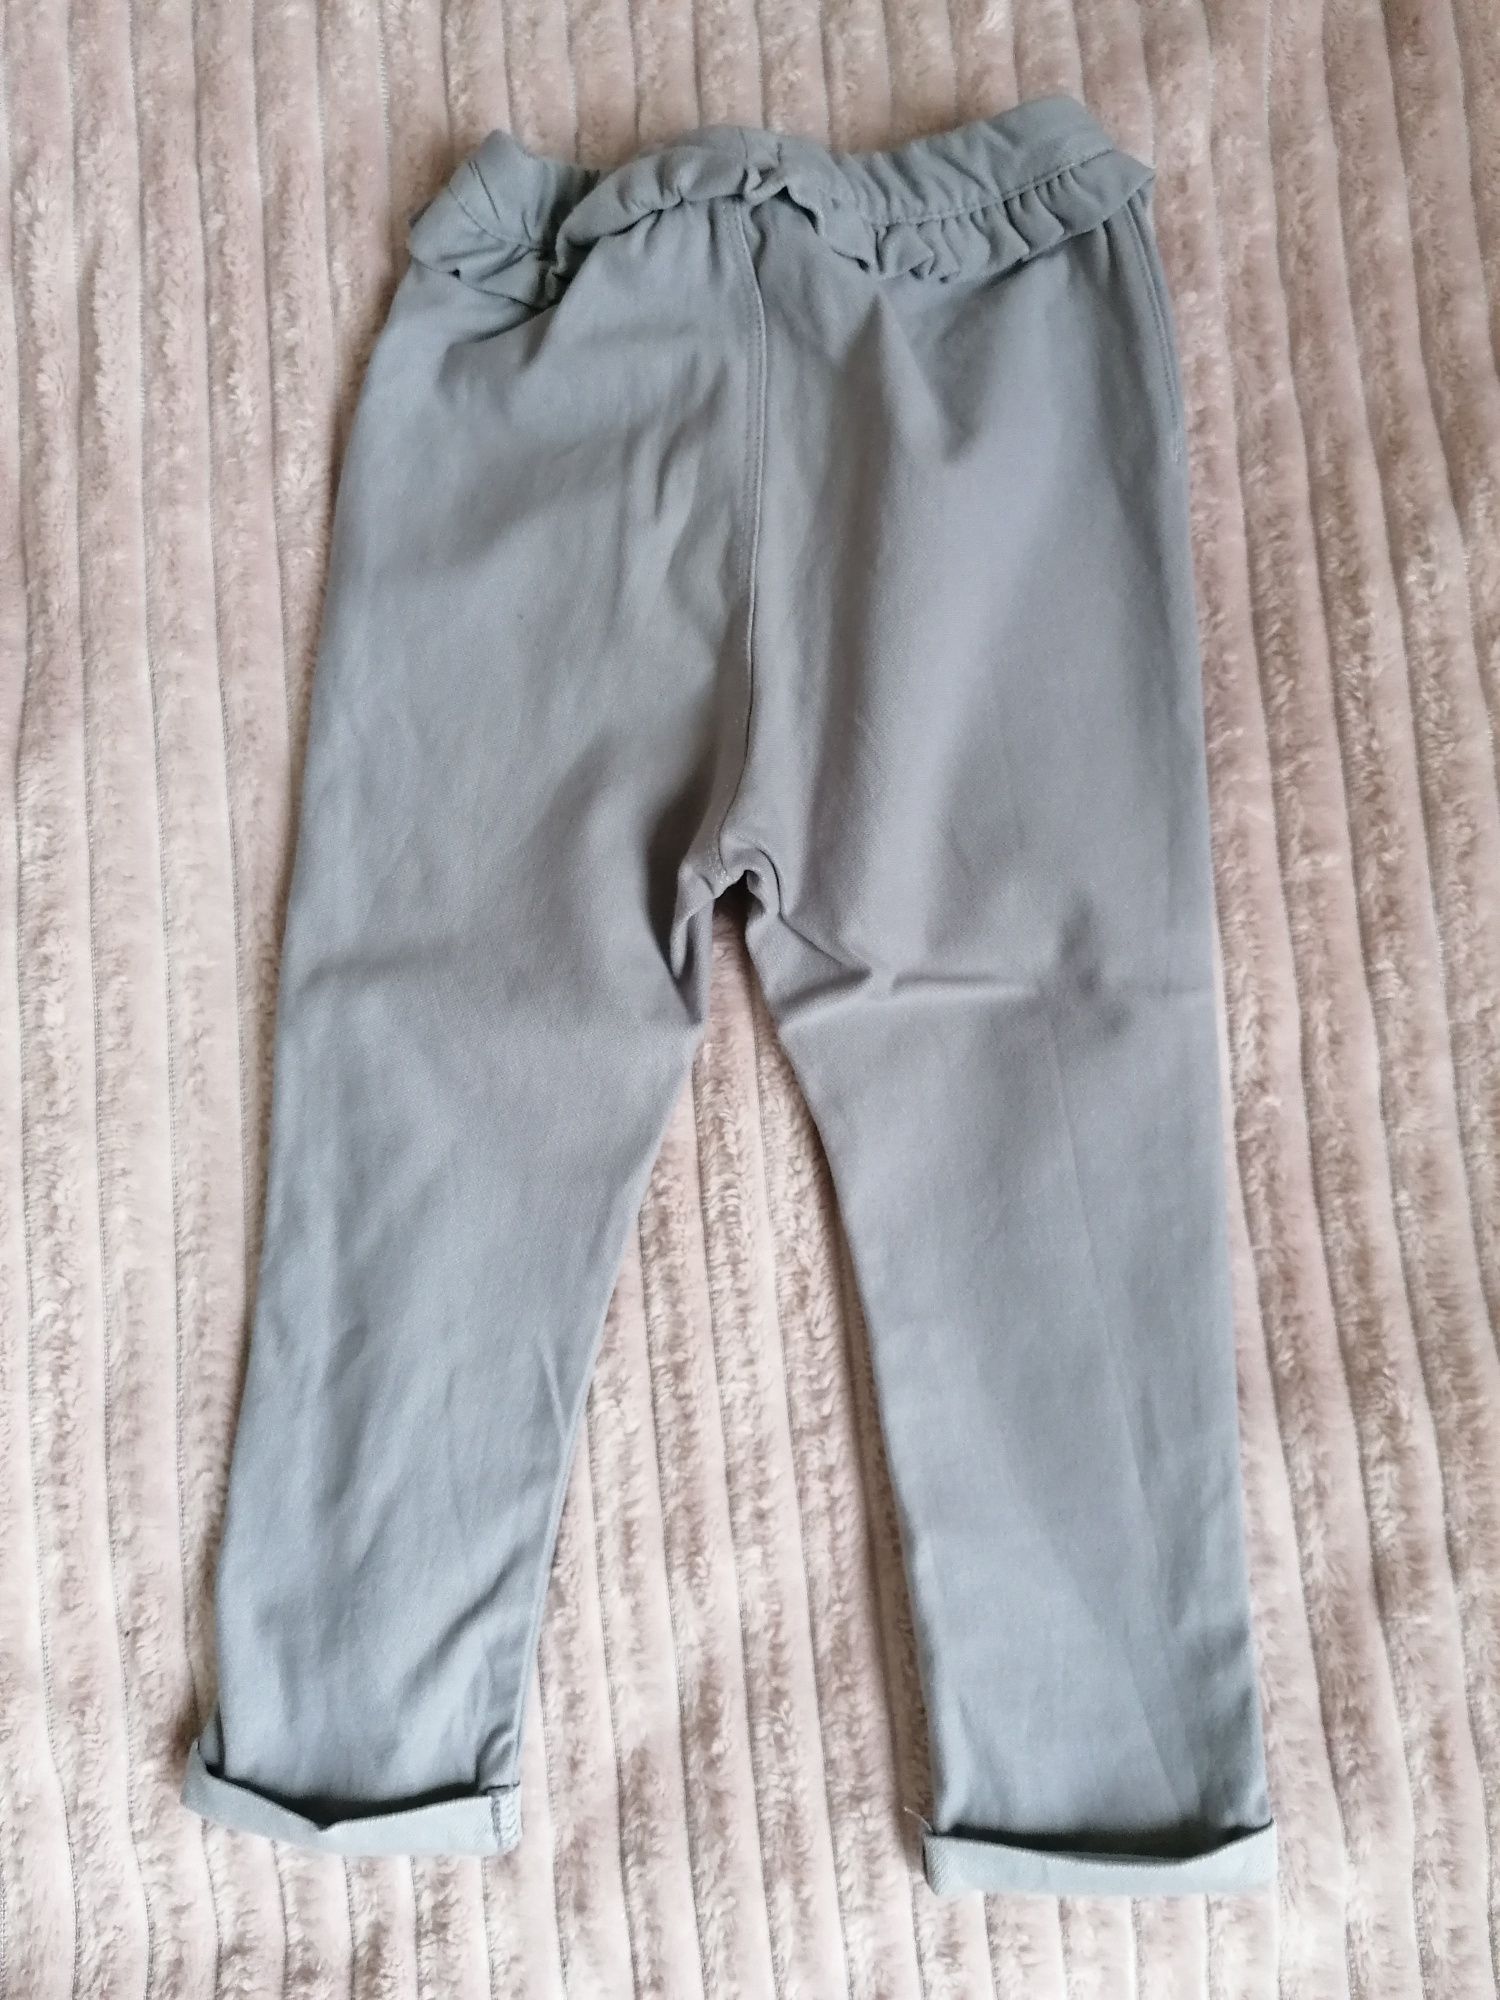 Szare spodnie, spodenki H&M r. 86 i Pepco, haremki ocieplane, legginsy